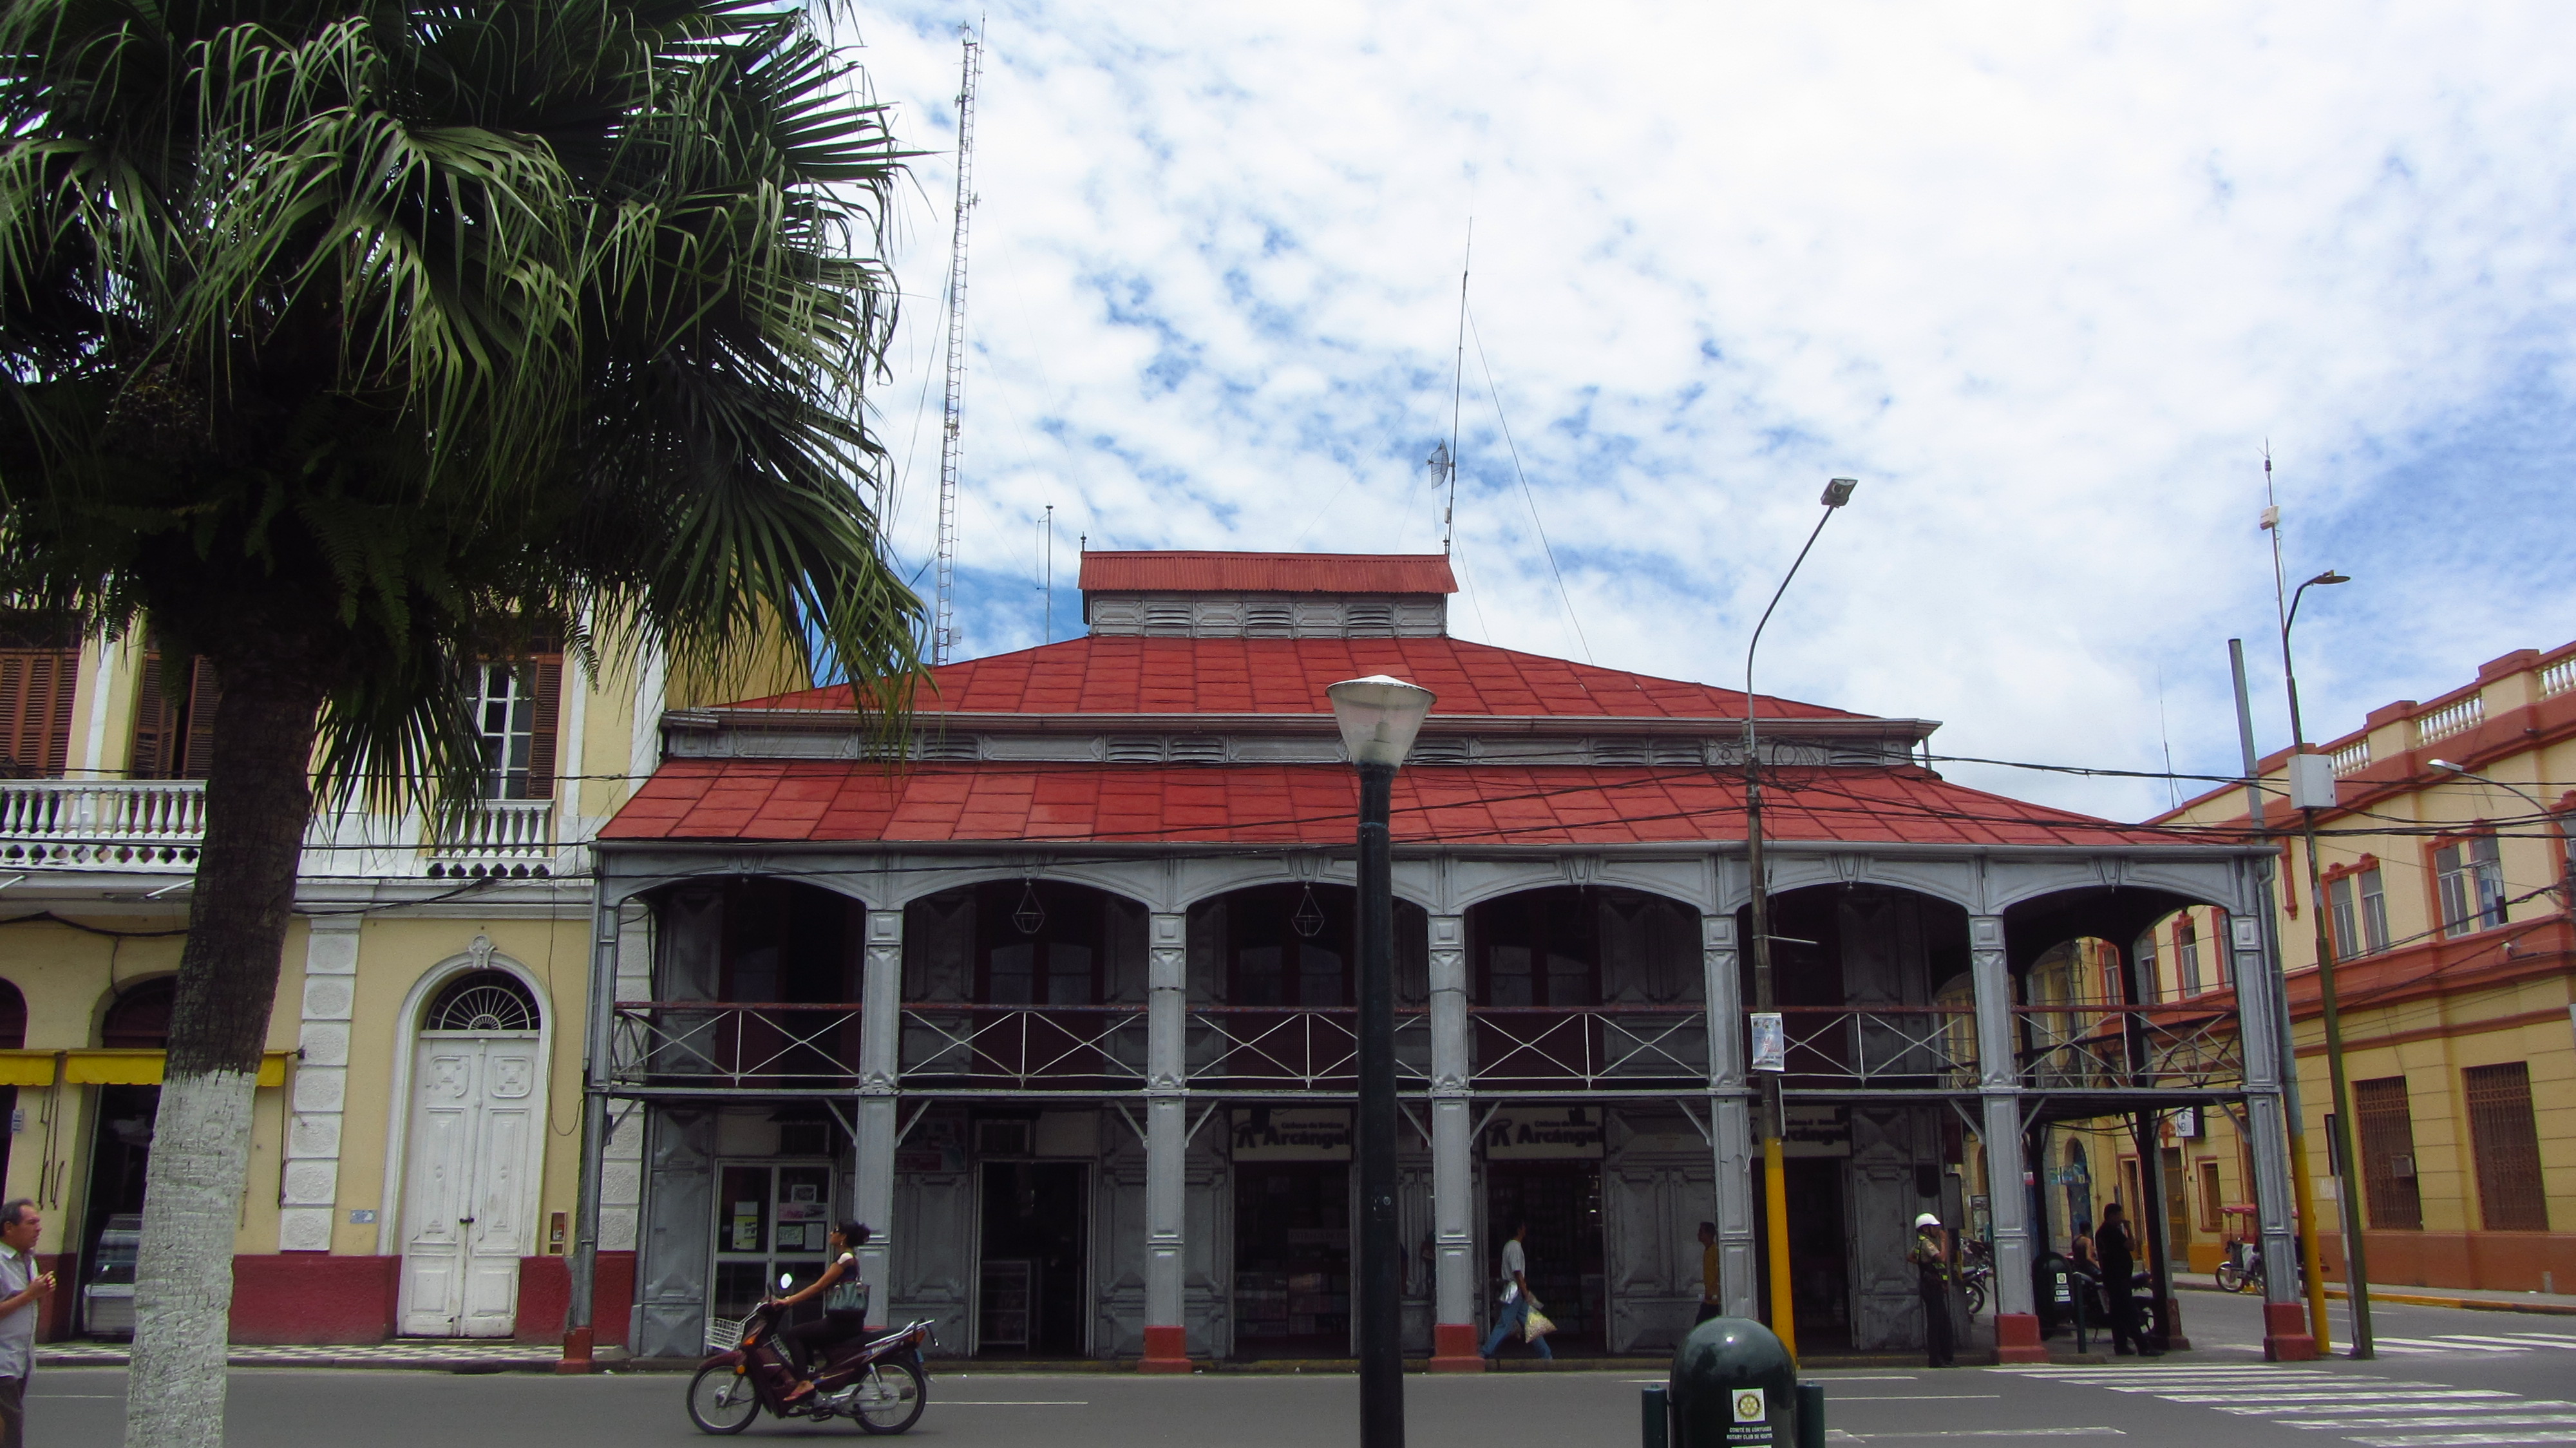 20 Things to do in Iquitos, casa de Fierro | Peruvian Sunrise